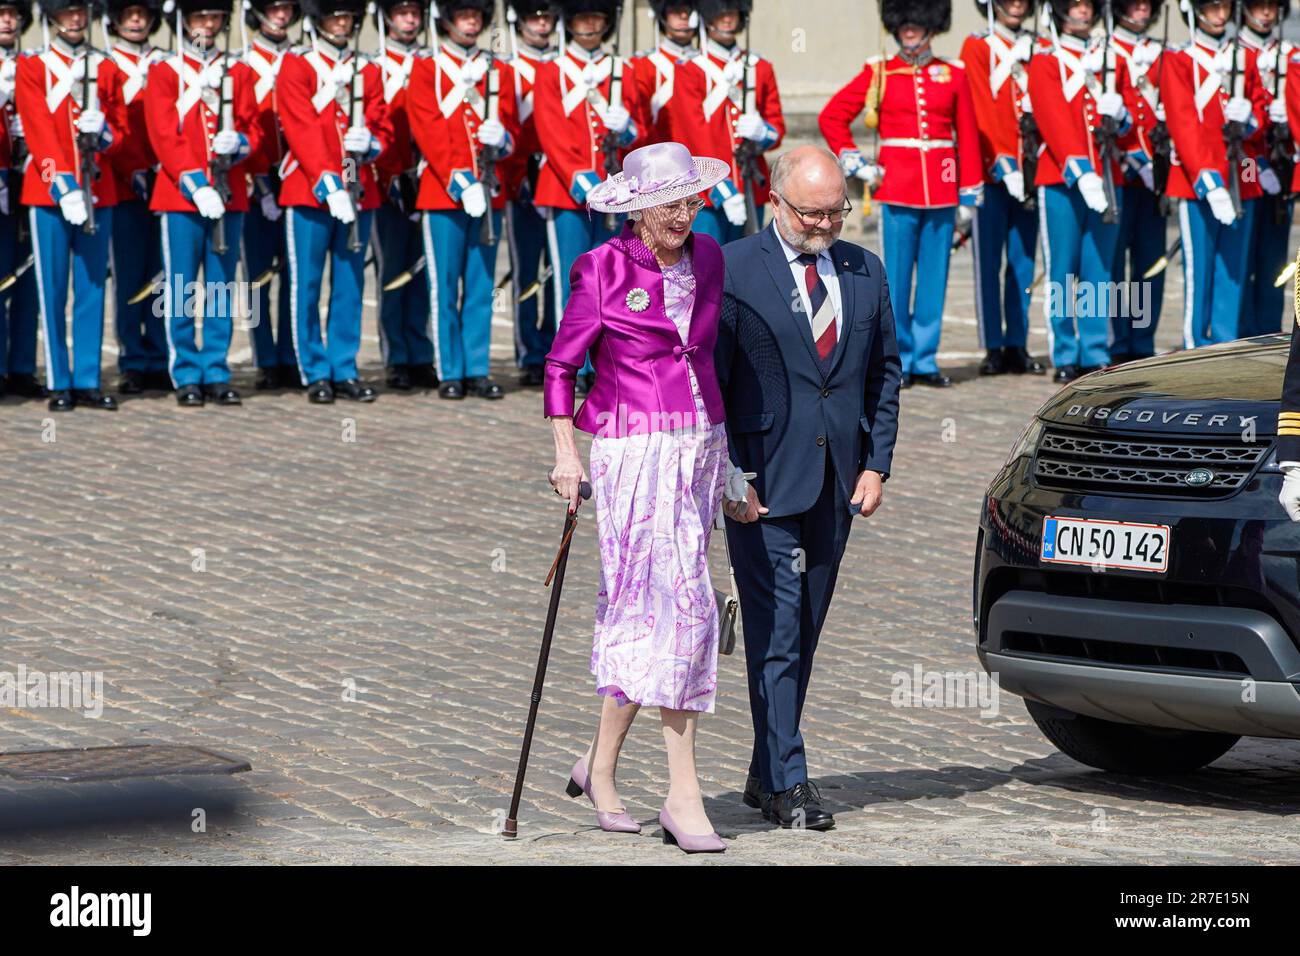 Kopenhagen, Dänemark 20230615. Königin Margrethe von Dänemark auf dem Weg, um das norwegische königliche Paar am Pier im Zusammenhang mit dem offiziellen Besuch in Dänemark am 15. Und 16. Juni zu empfangen. Foto: Lise Aaserud/NTB Stockfoto